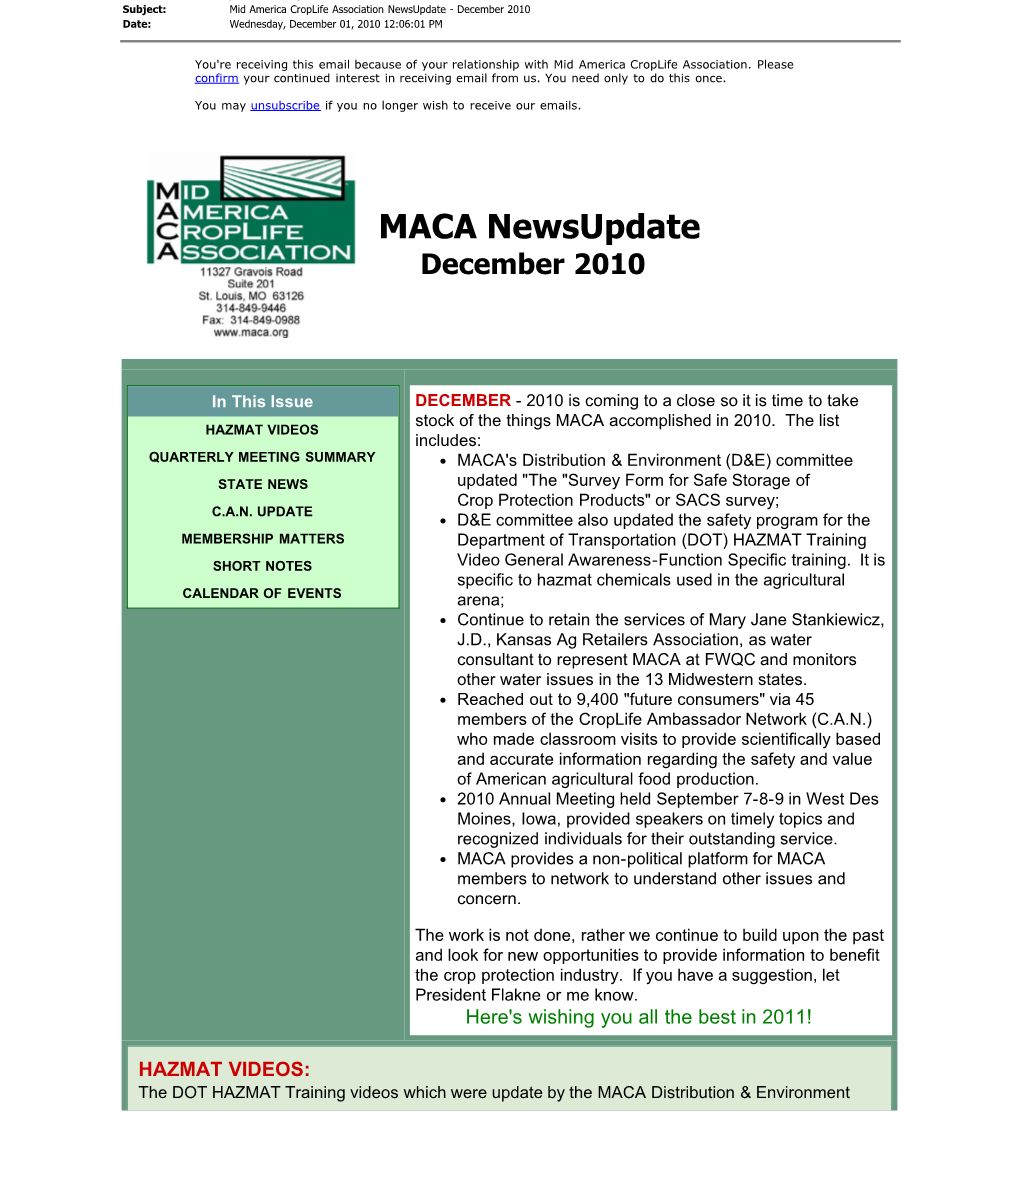 MACA Newsupdate December 2010